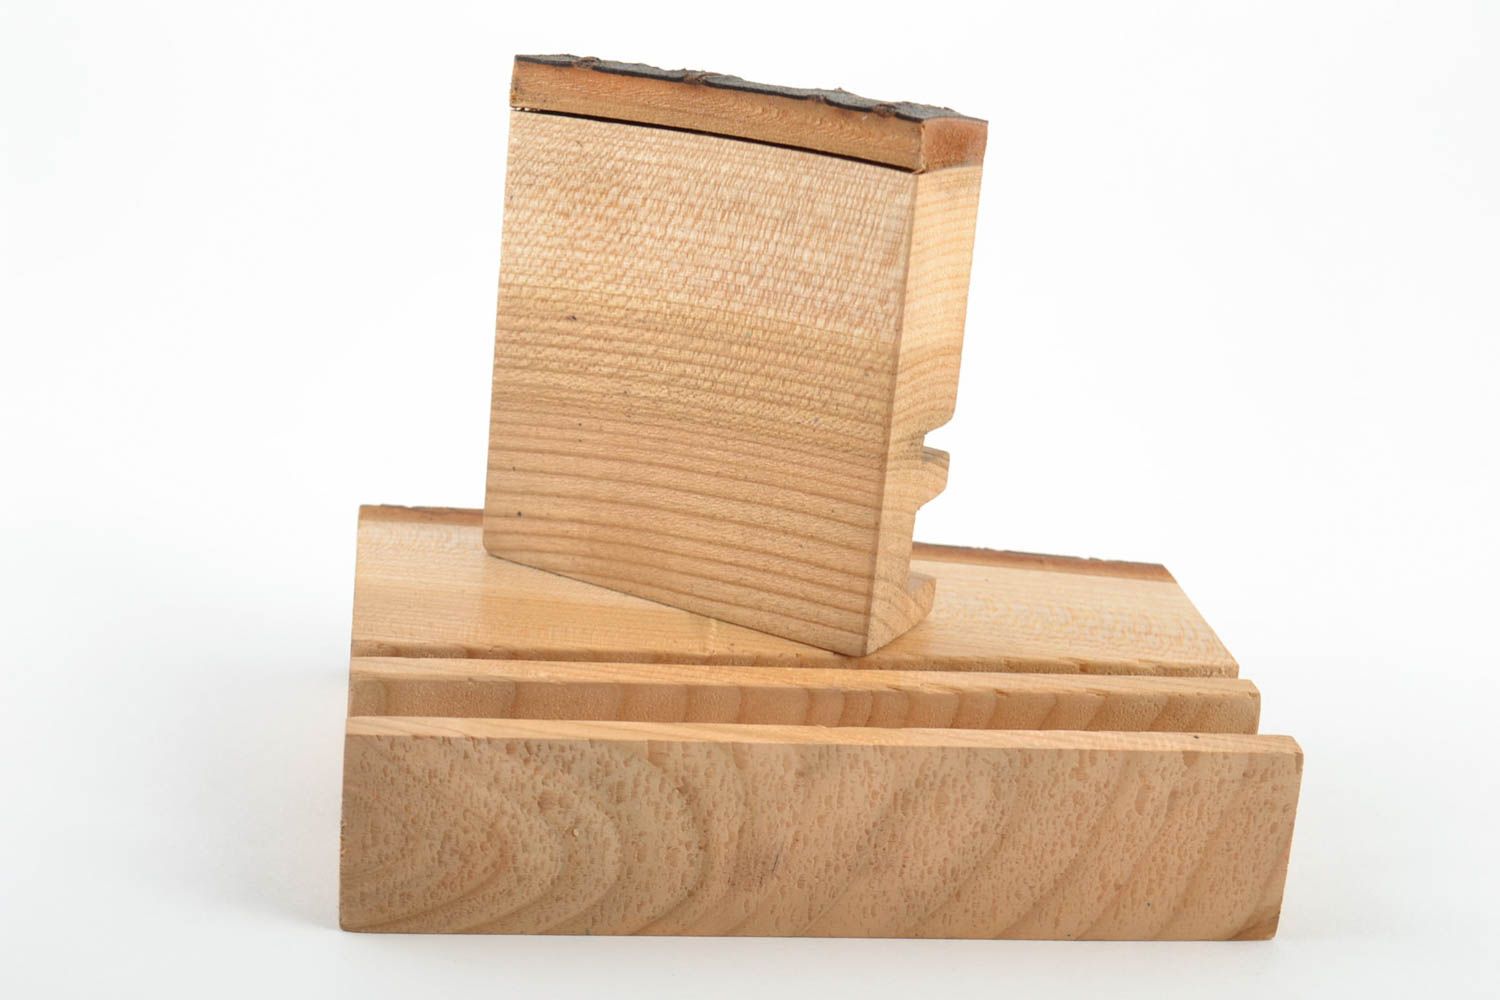 Soportes de madera para Tablet o móvil hechos a mano 2 artículos ecológicos  foto 4